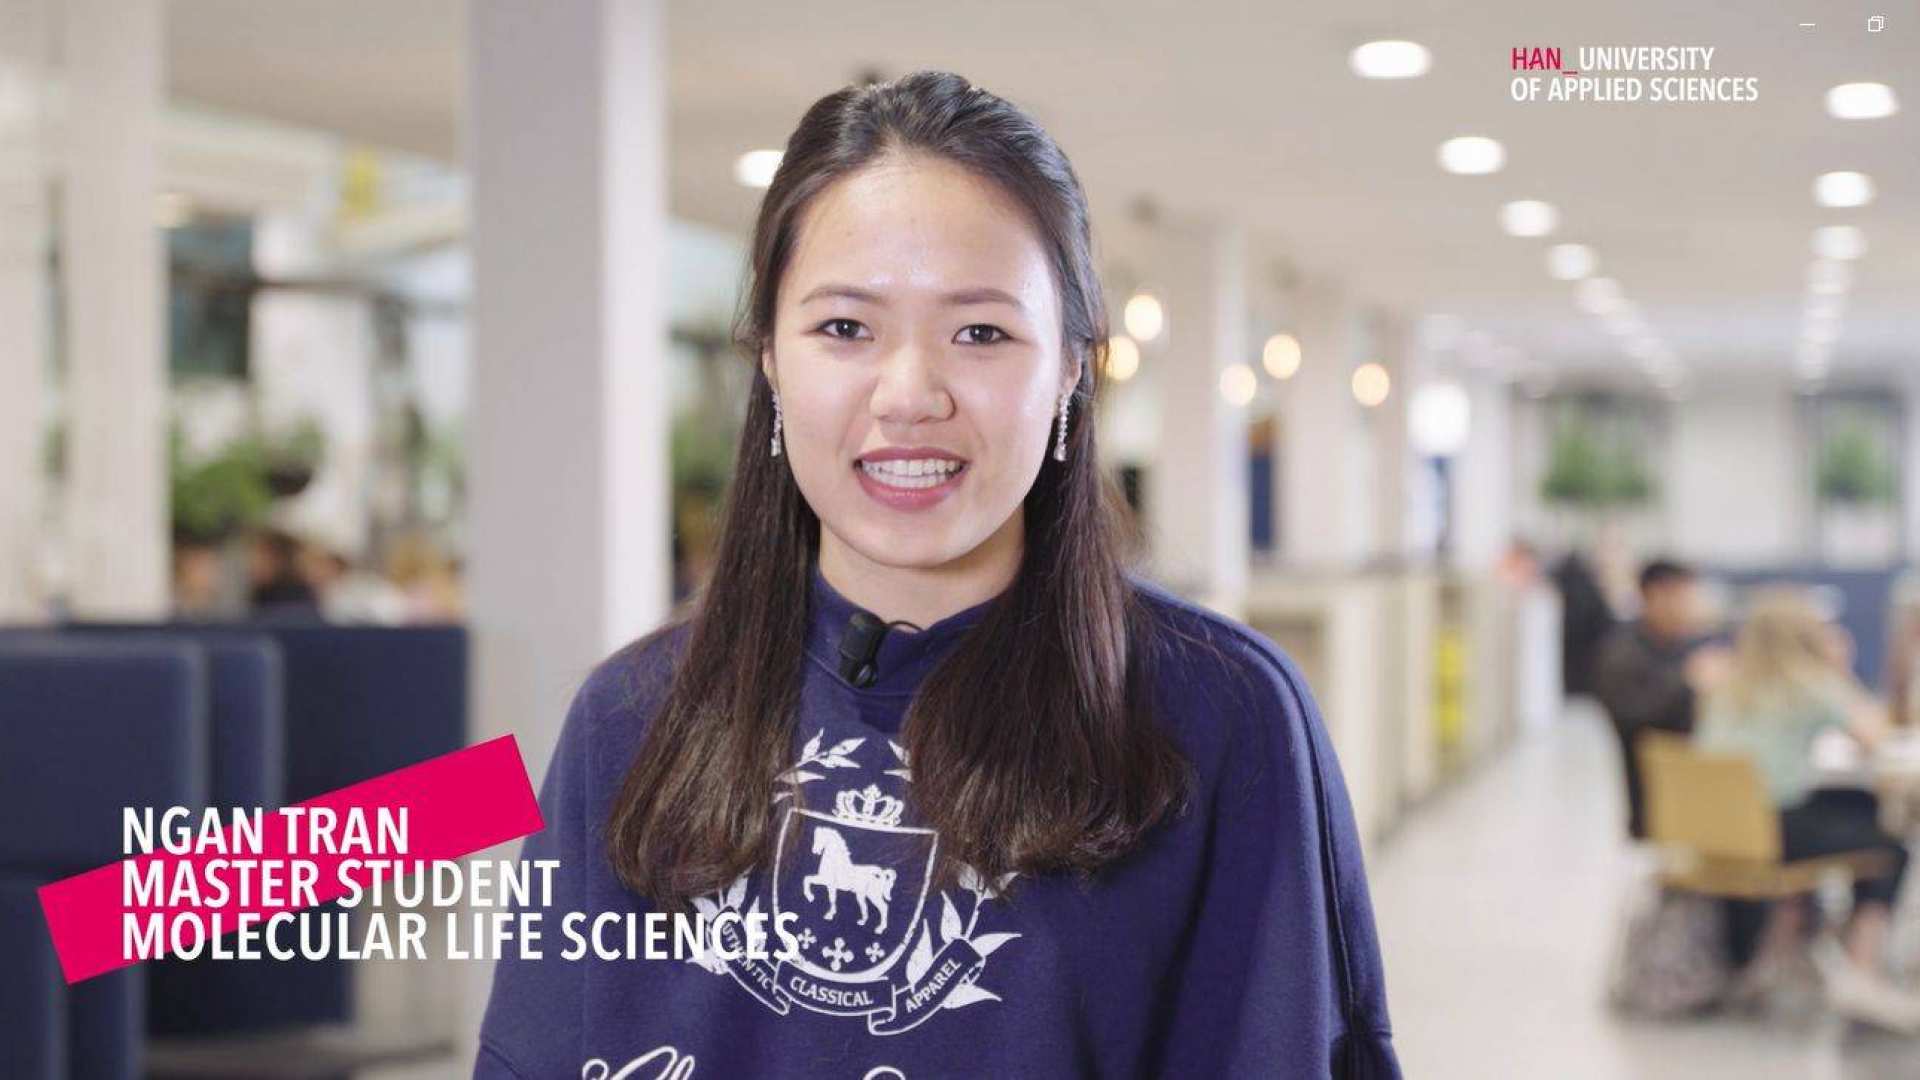 Ngan Tran is deeltijdstudent van de masteropleiding Molecular Life Sciences in Nijmegen